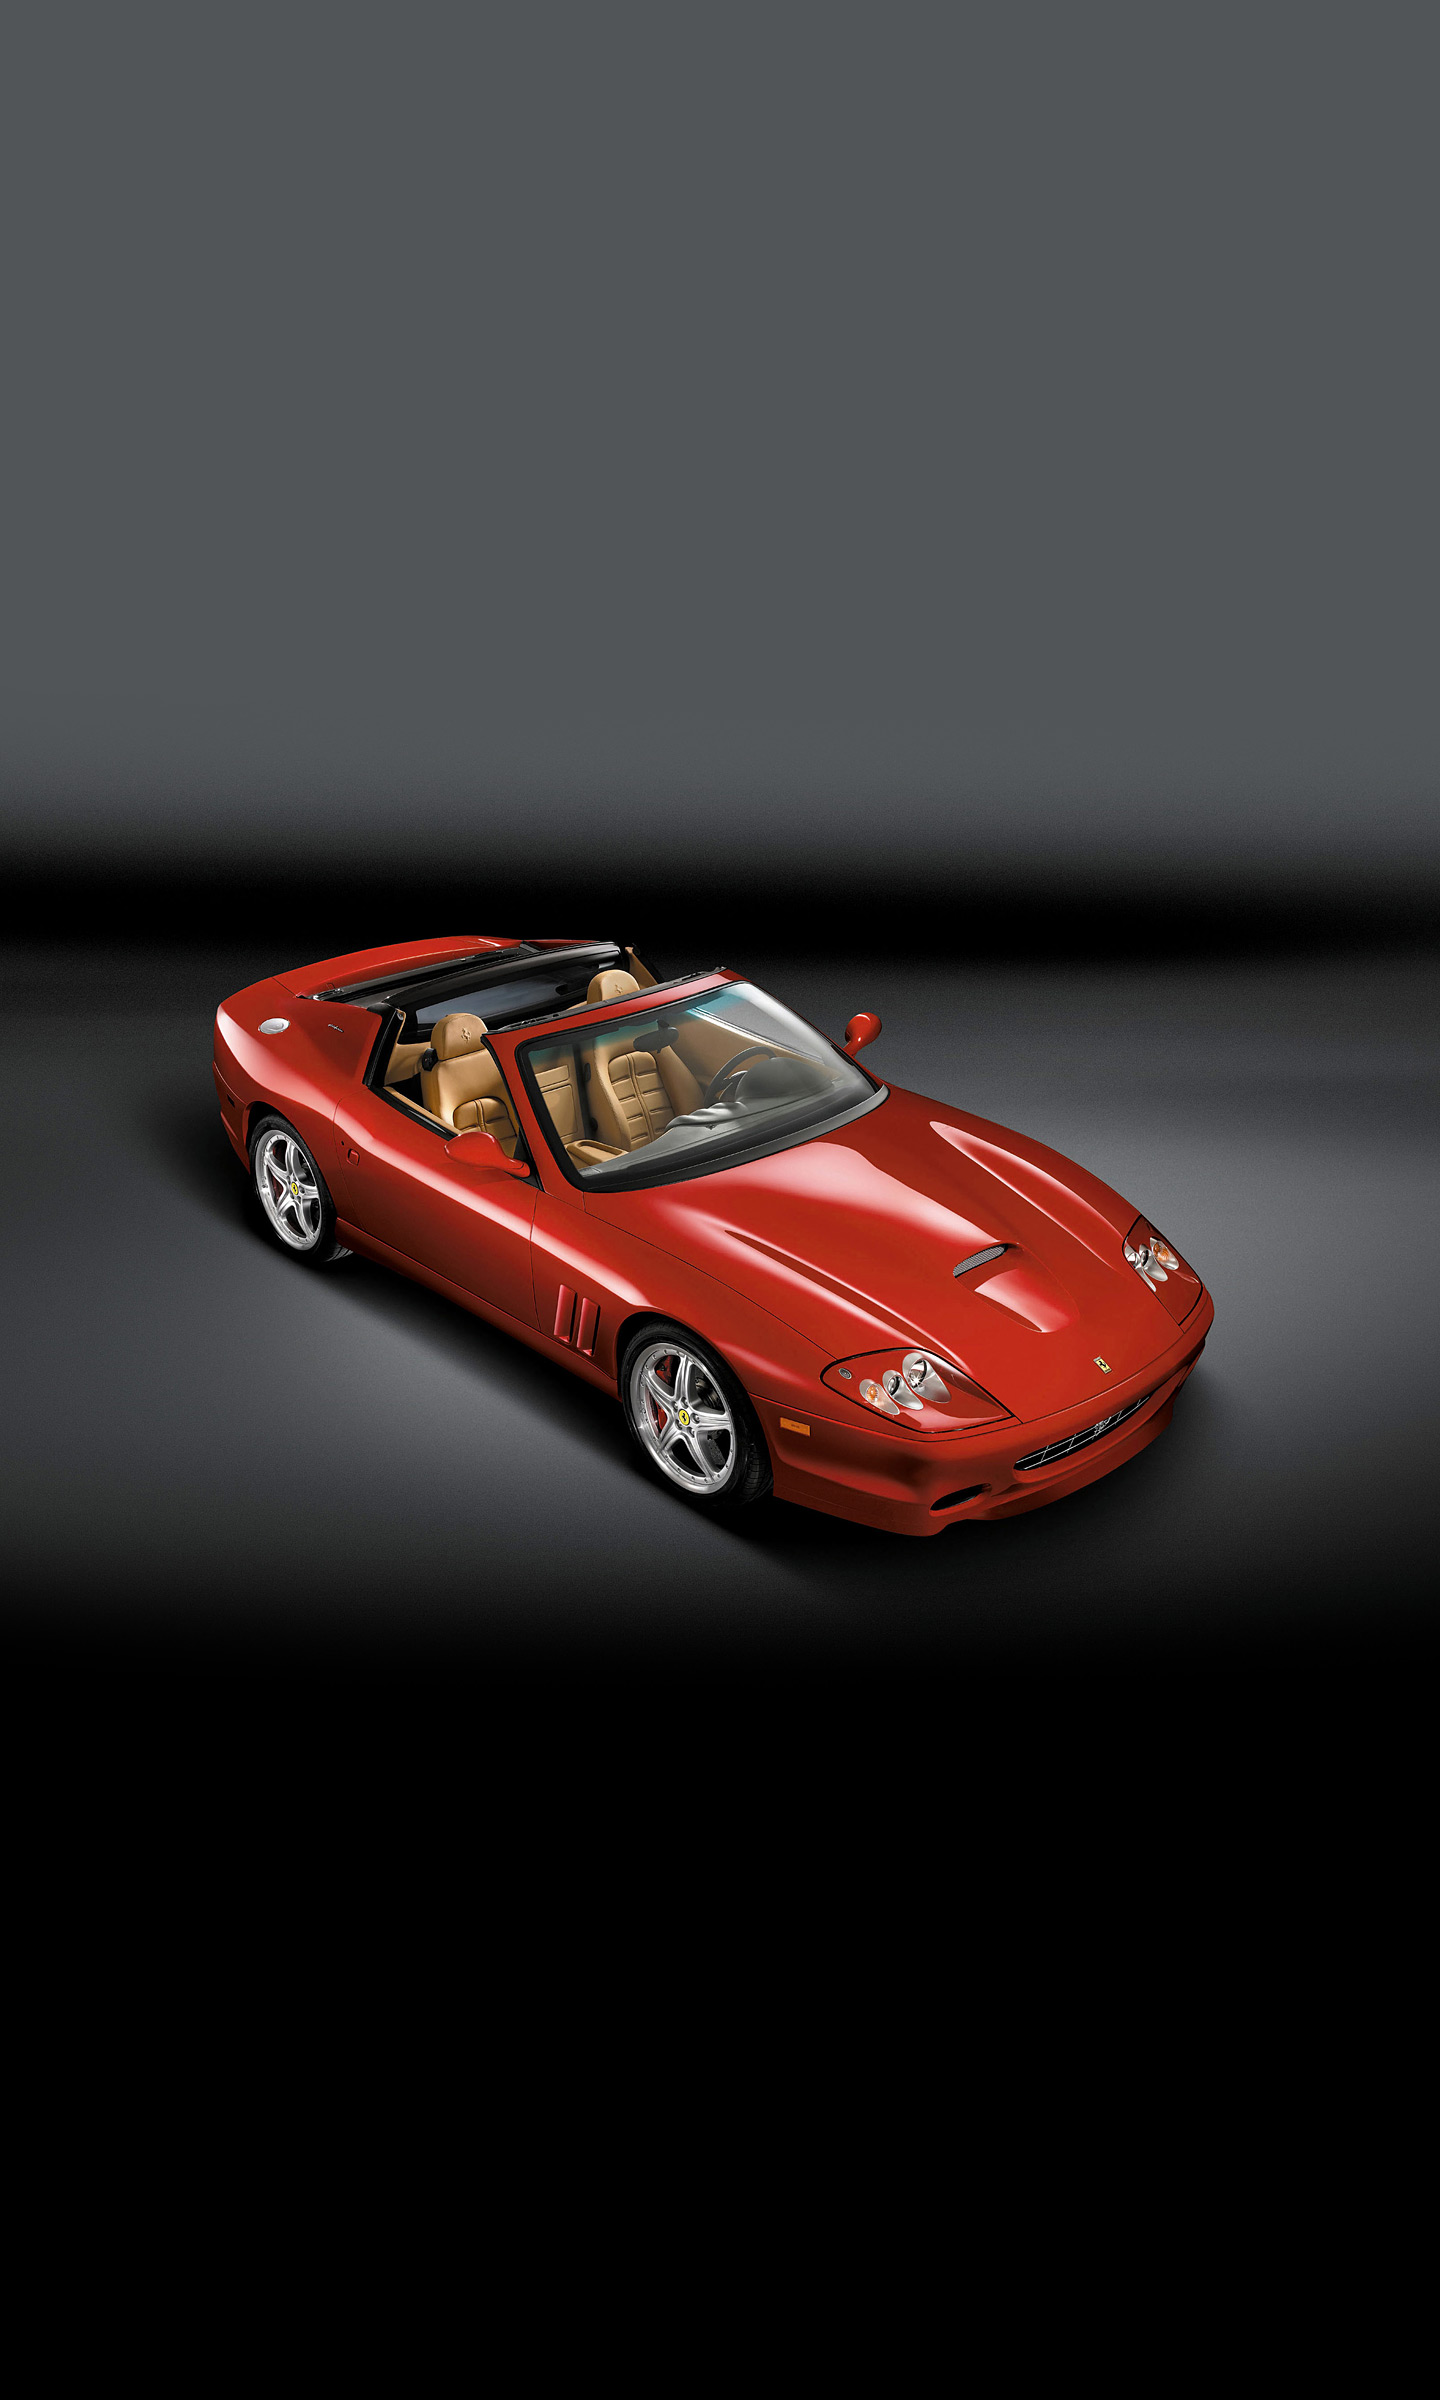  2005 Ferrari 575M Superamerica Wallpaper.